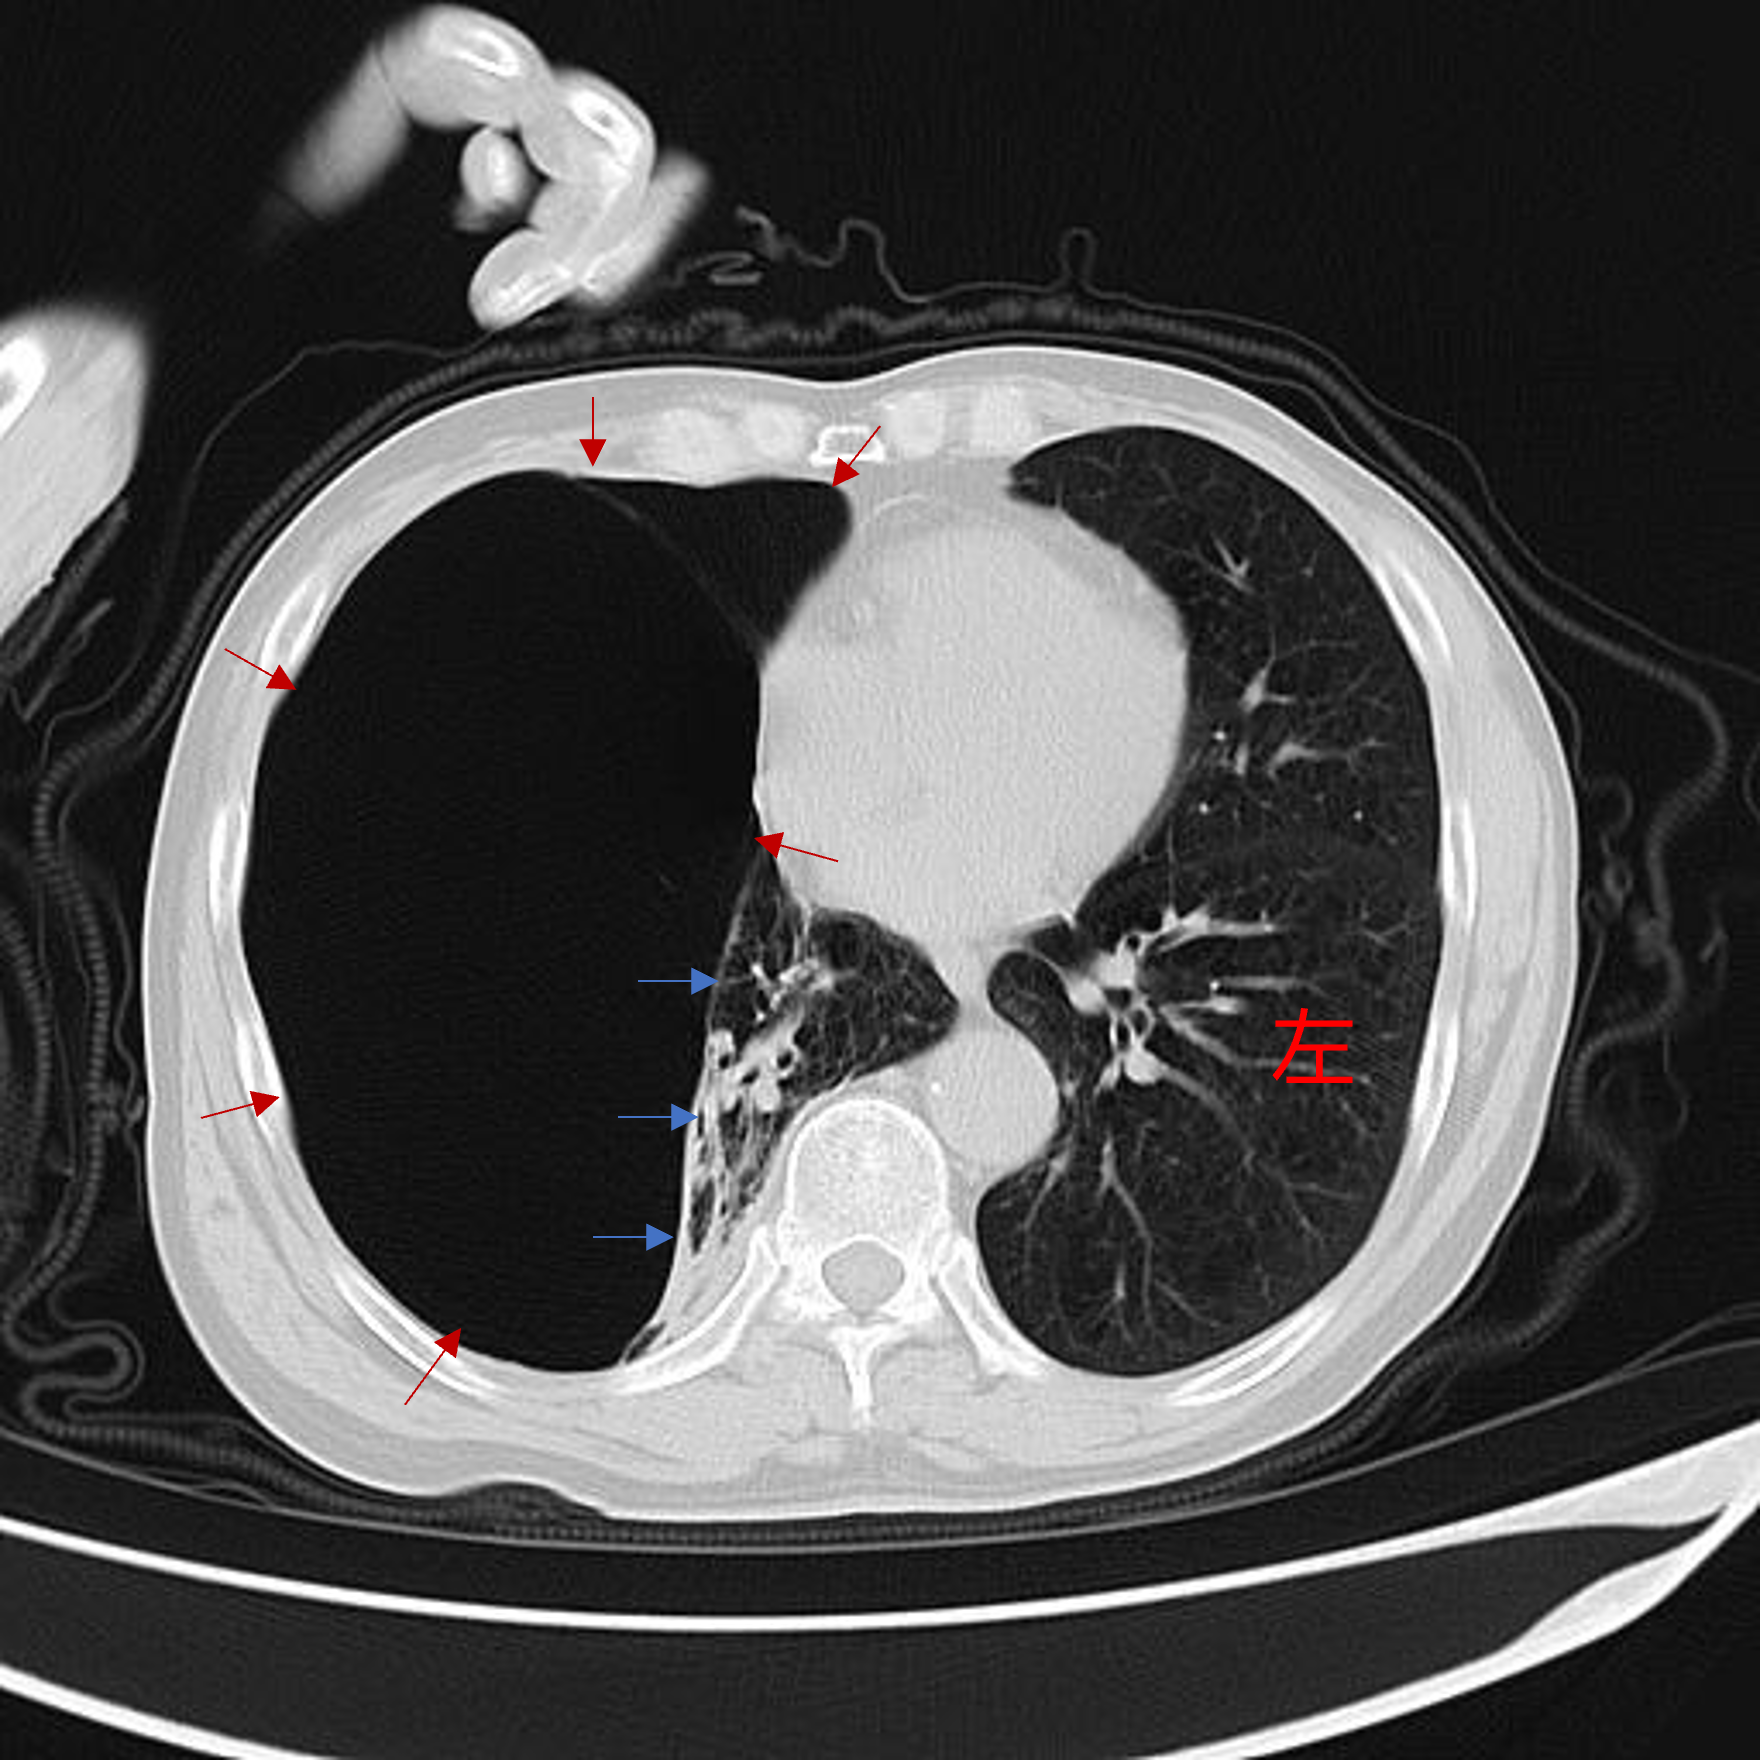 肺大泡的x线典型图片图片